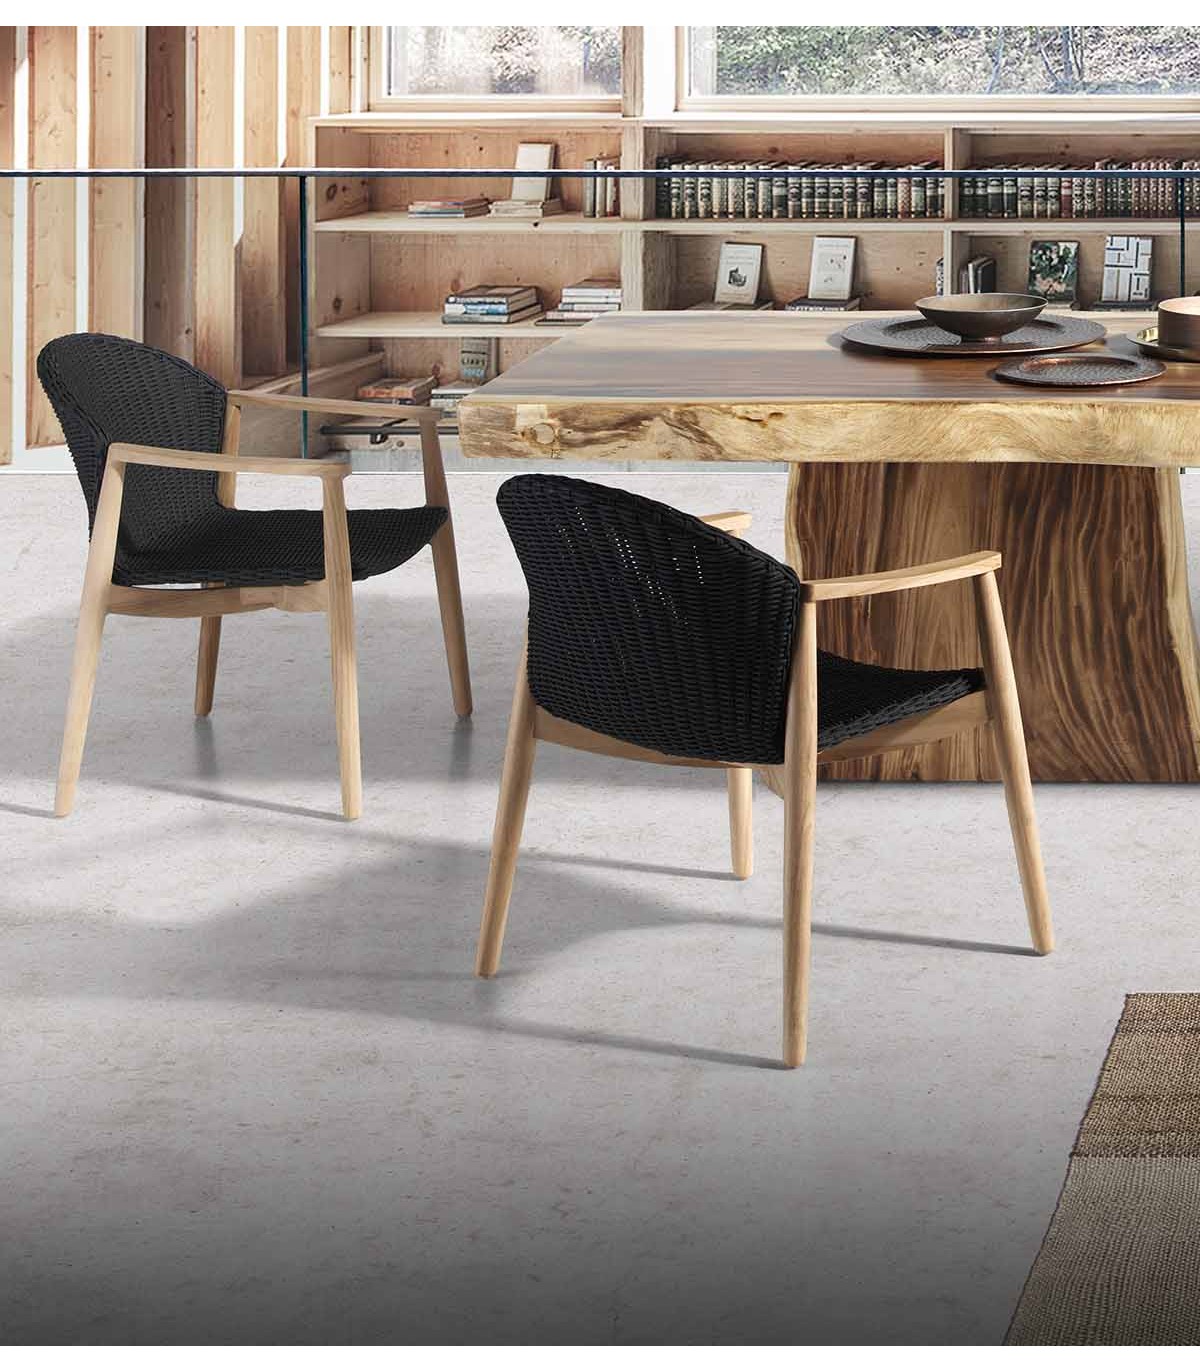 Elegante sillón único y de madera rústica.